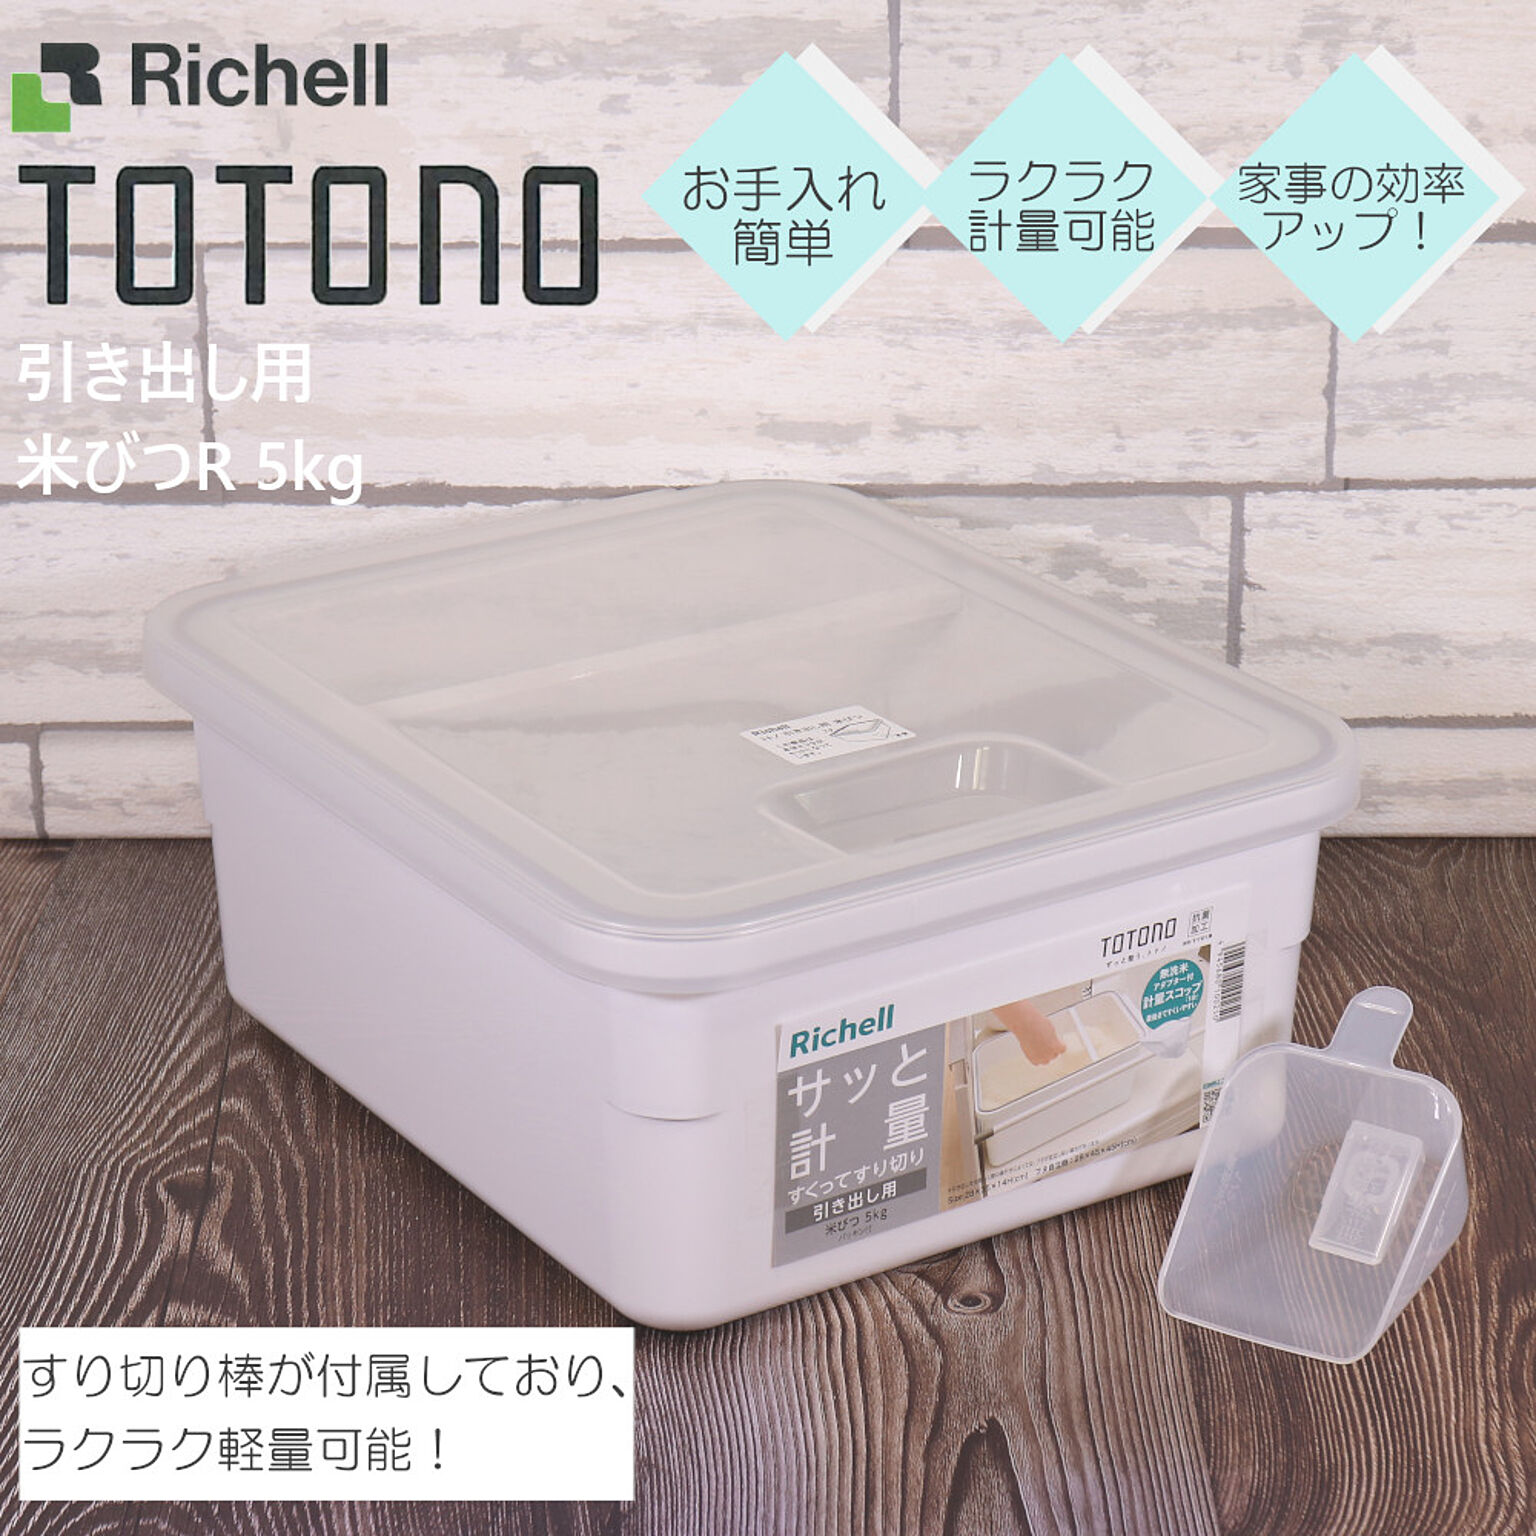 トトノ 米びつ R 5kg 引き出し用 リッチェル 米櫃 米 保存容器 整理 収納 抗菌 加工 新 TOTONO